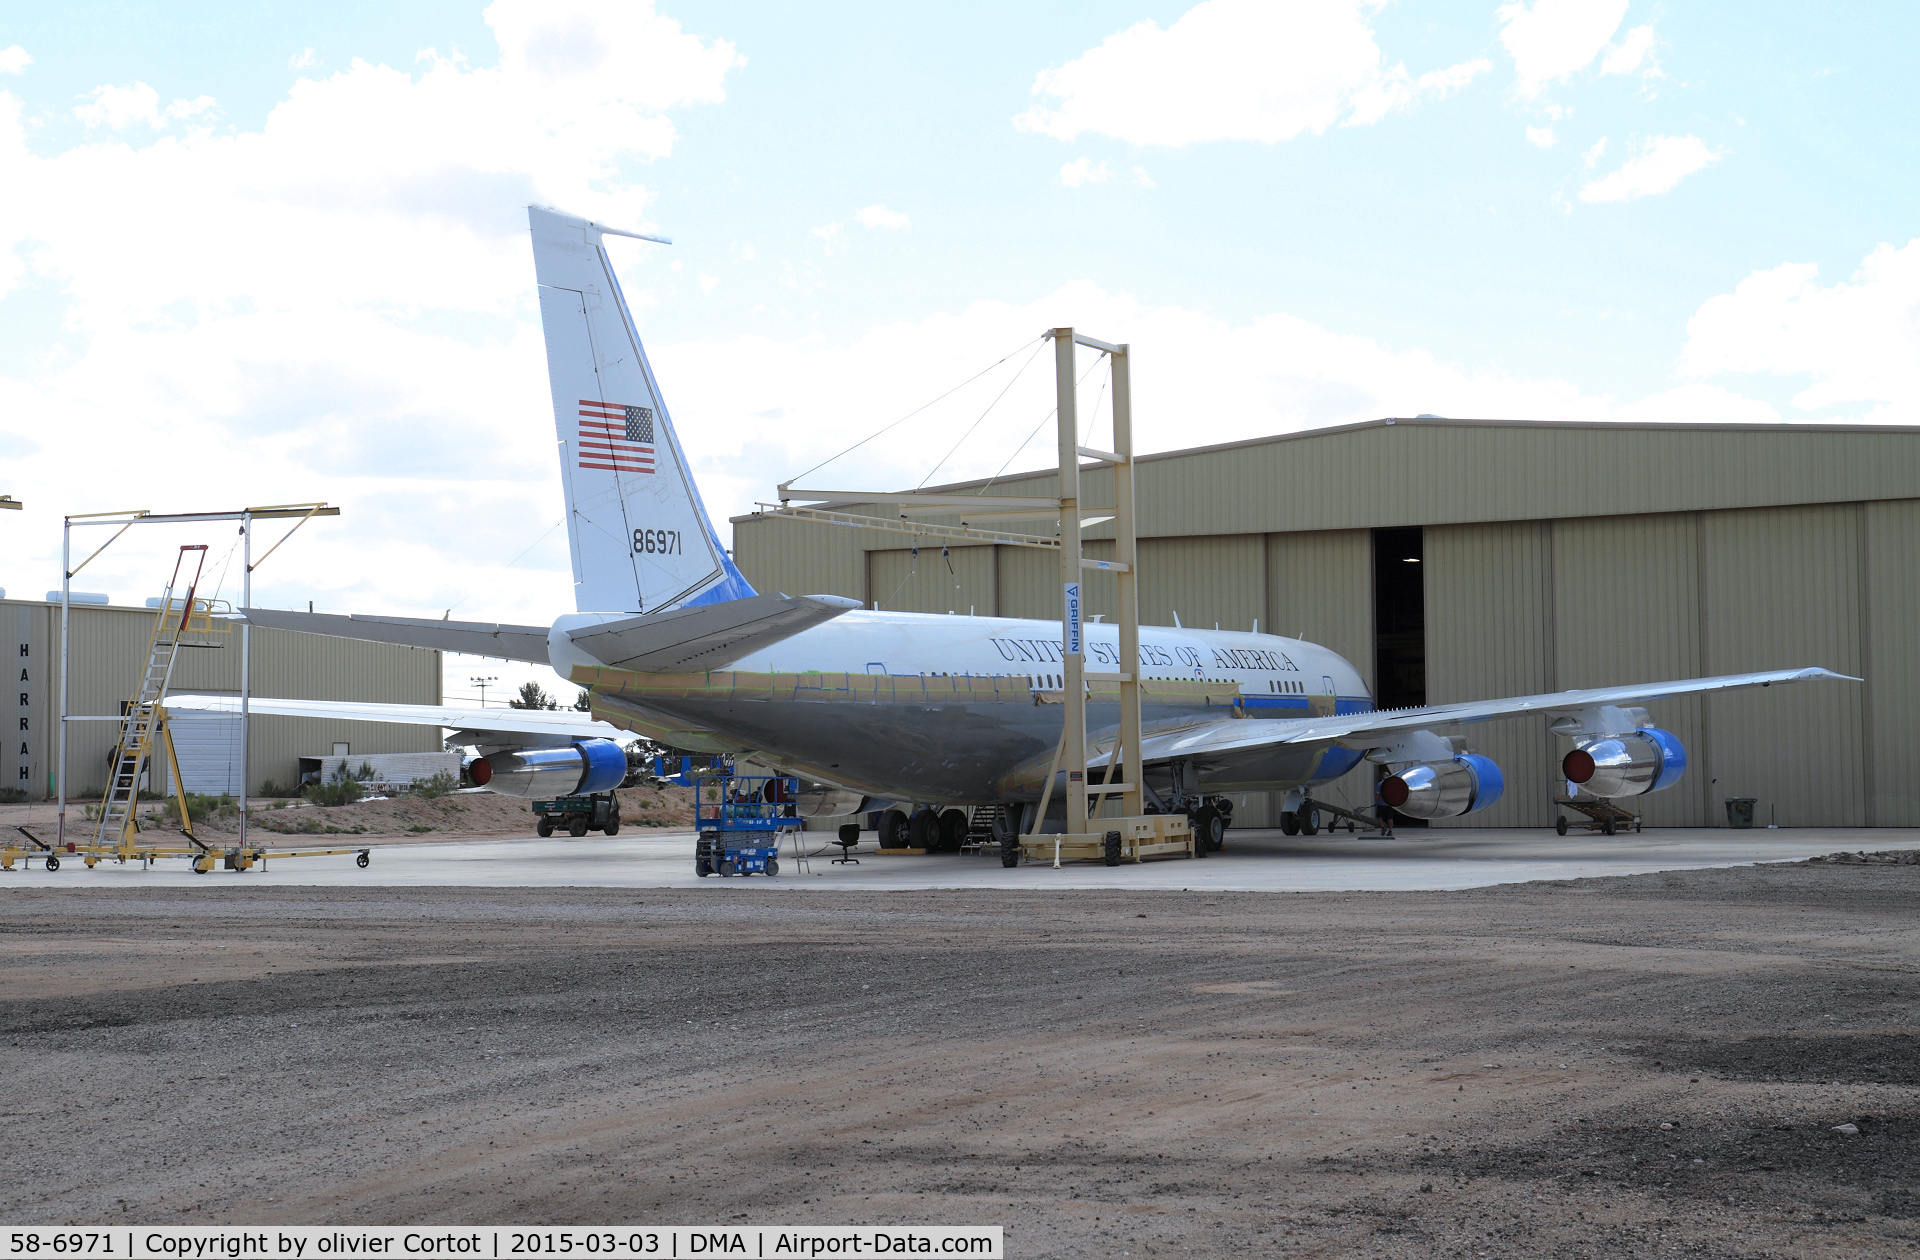 58-6971, 1959 Boeing VC-137B C/N 17926/40, paint job in 2015